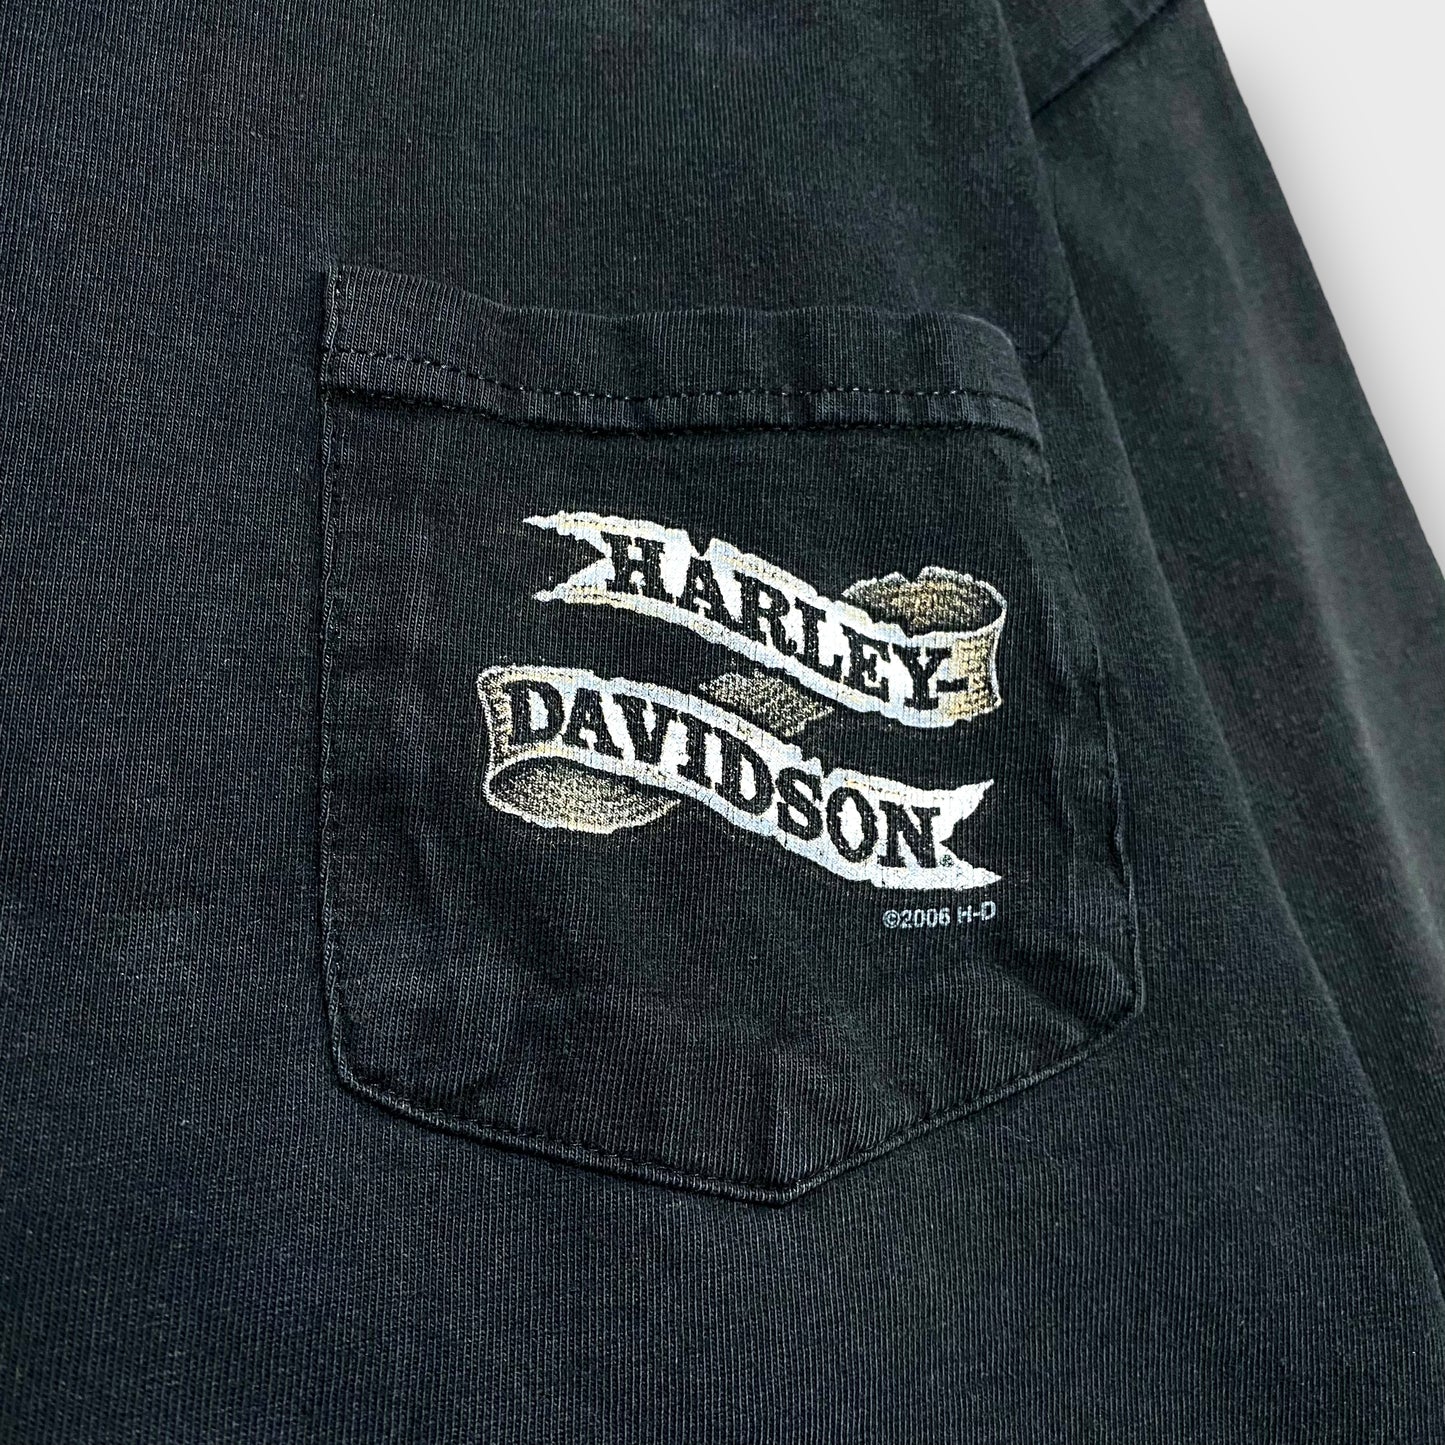 00's "Harley-Davidson" L/S t-shirt